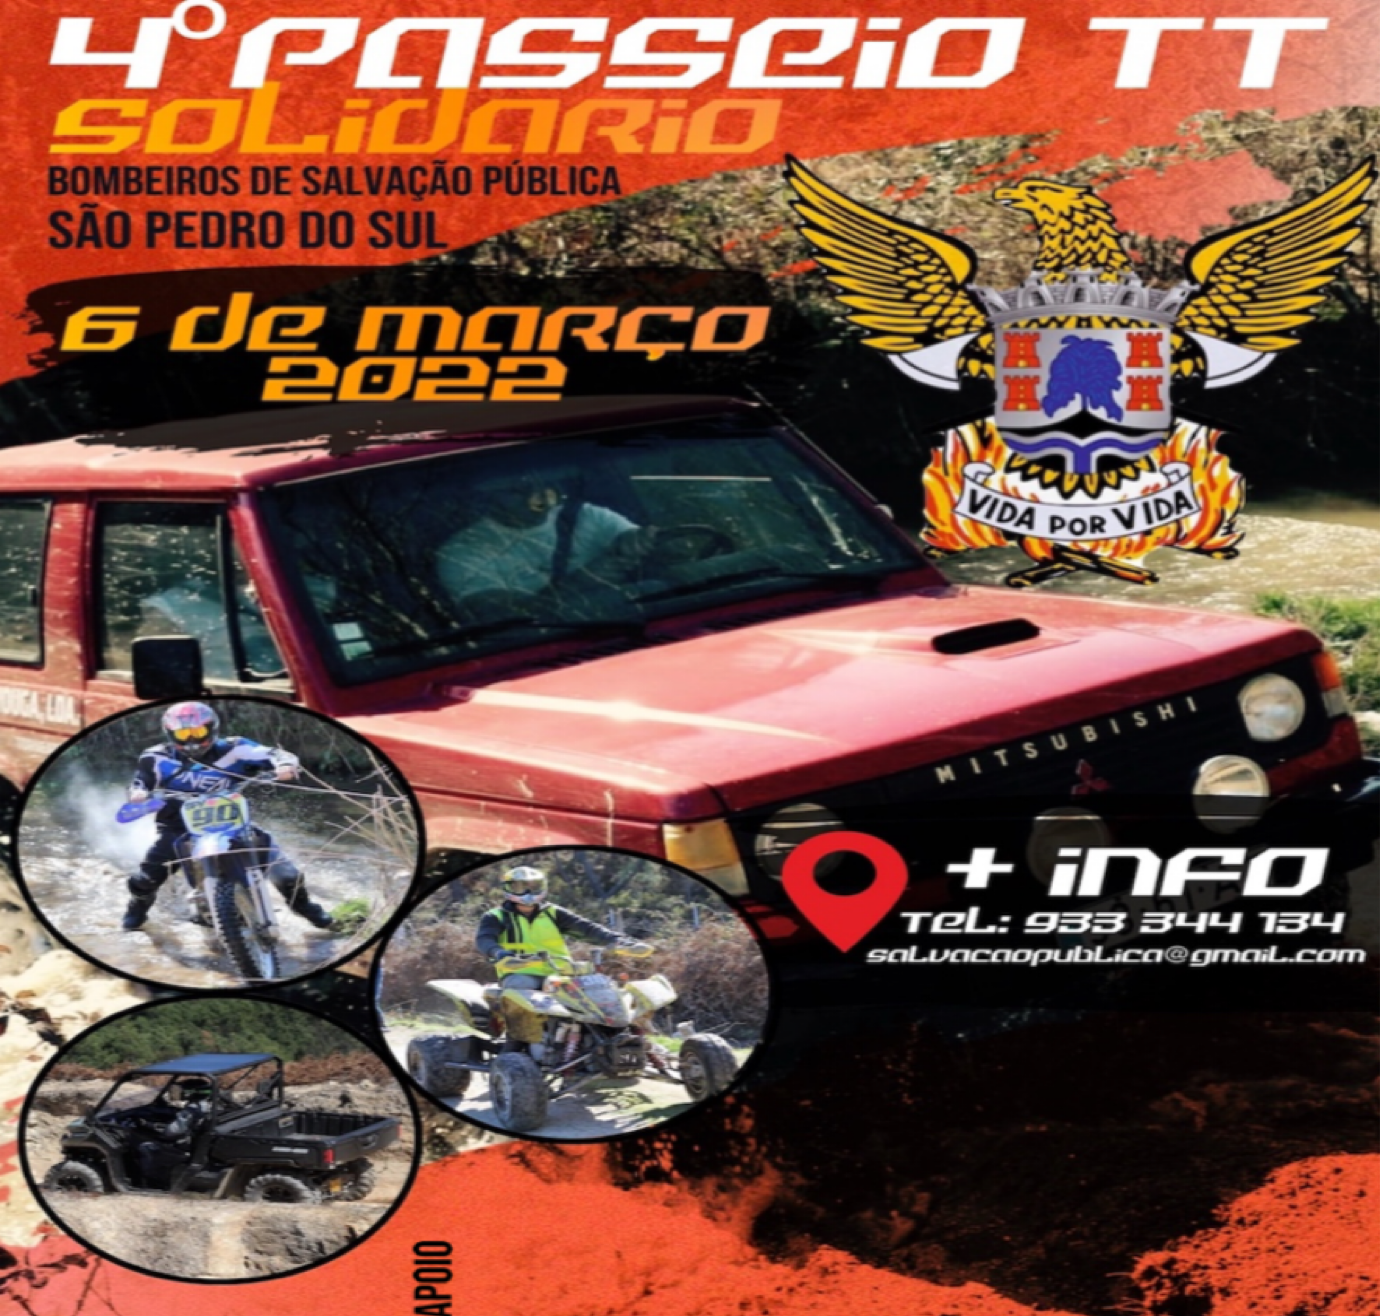 You are currently viewing 4º Passeio TT – Corpo Voluntário Salvação Pública S. Pedro do Sul – 6 de março – Jipes, Motas, Quads